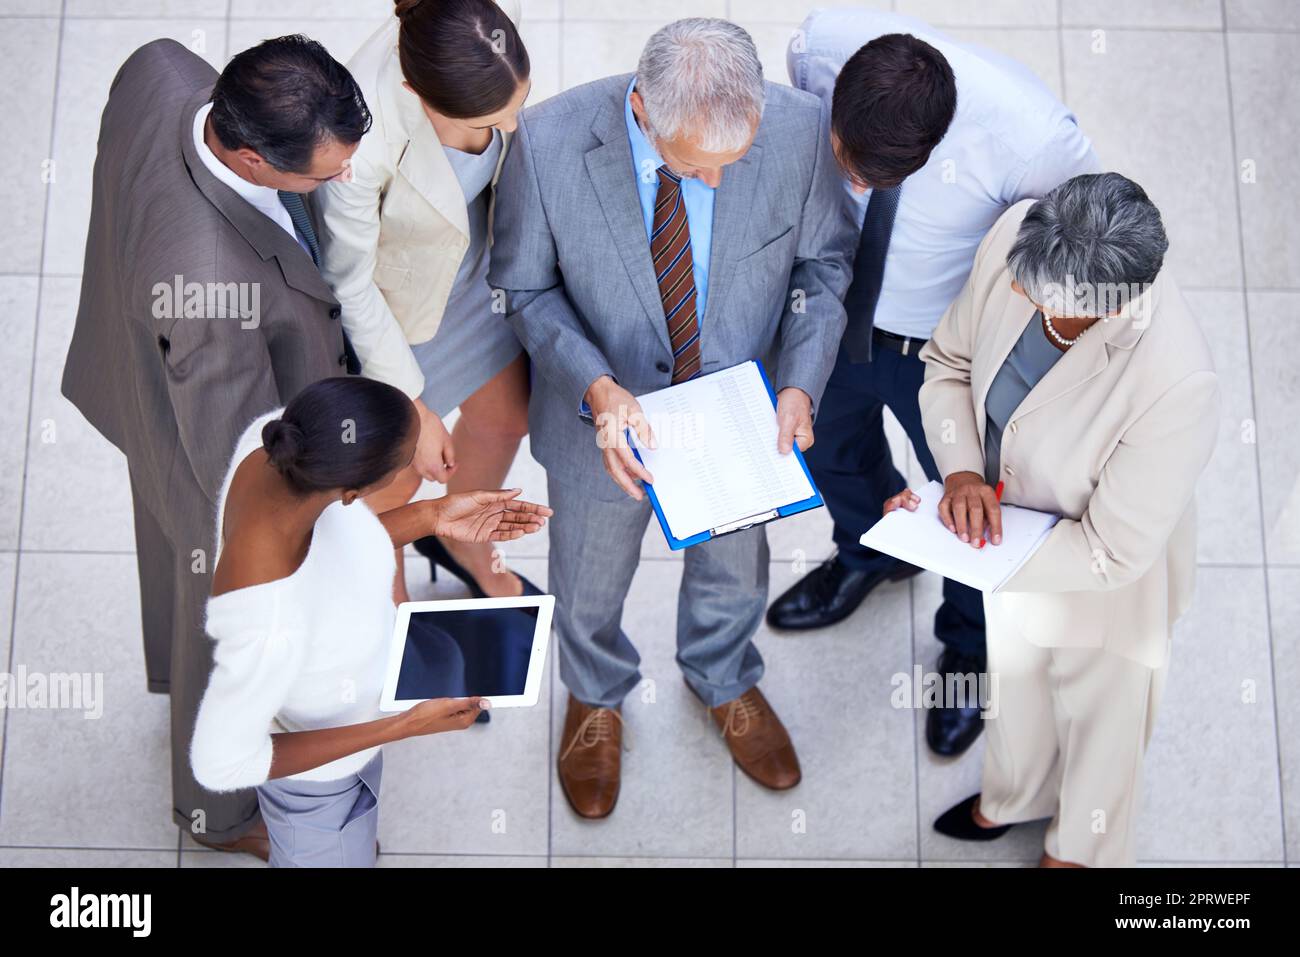 Sie haben ein spontanes Meeting. Ein vielfältiges Business-Team diskutiert Schreibarbeit in einem Meeting. Stockfoto